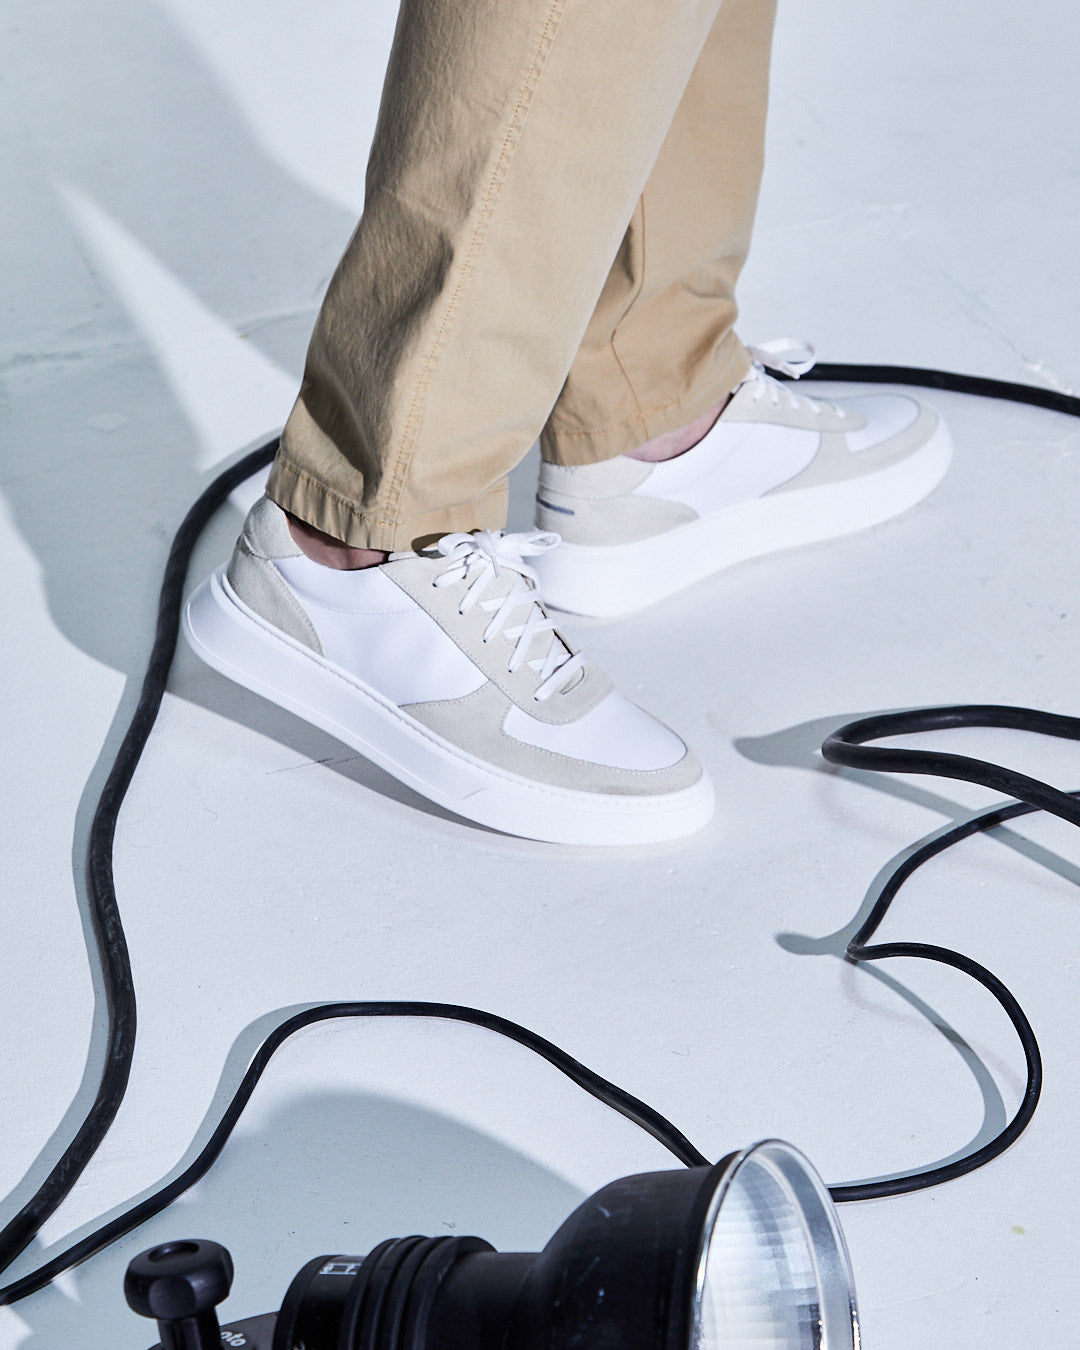 Marais Sneaker Fog / Off White